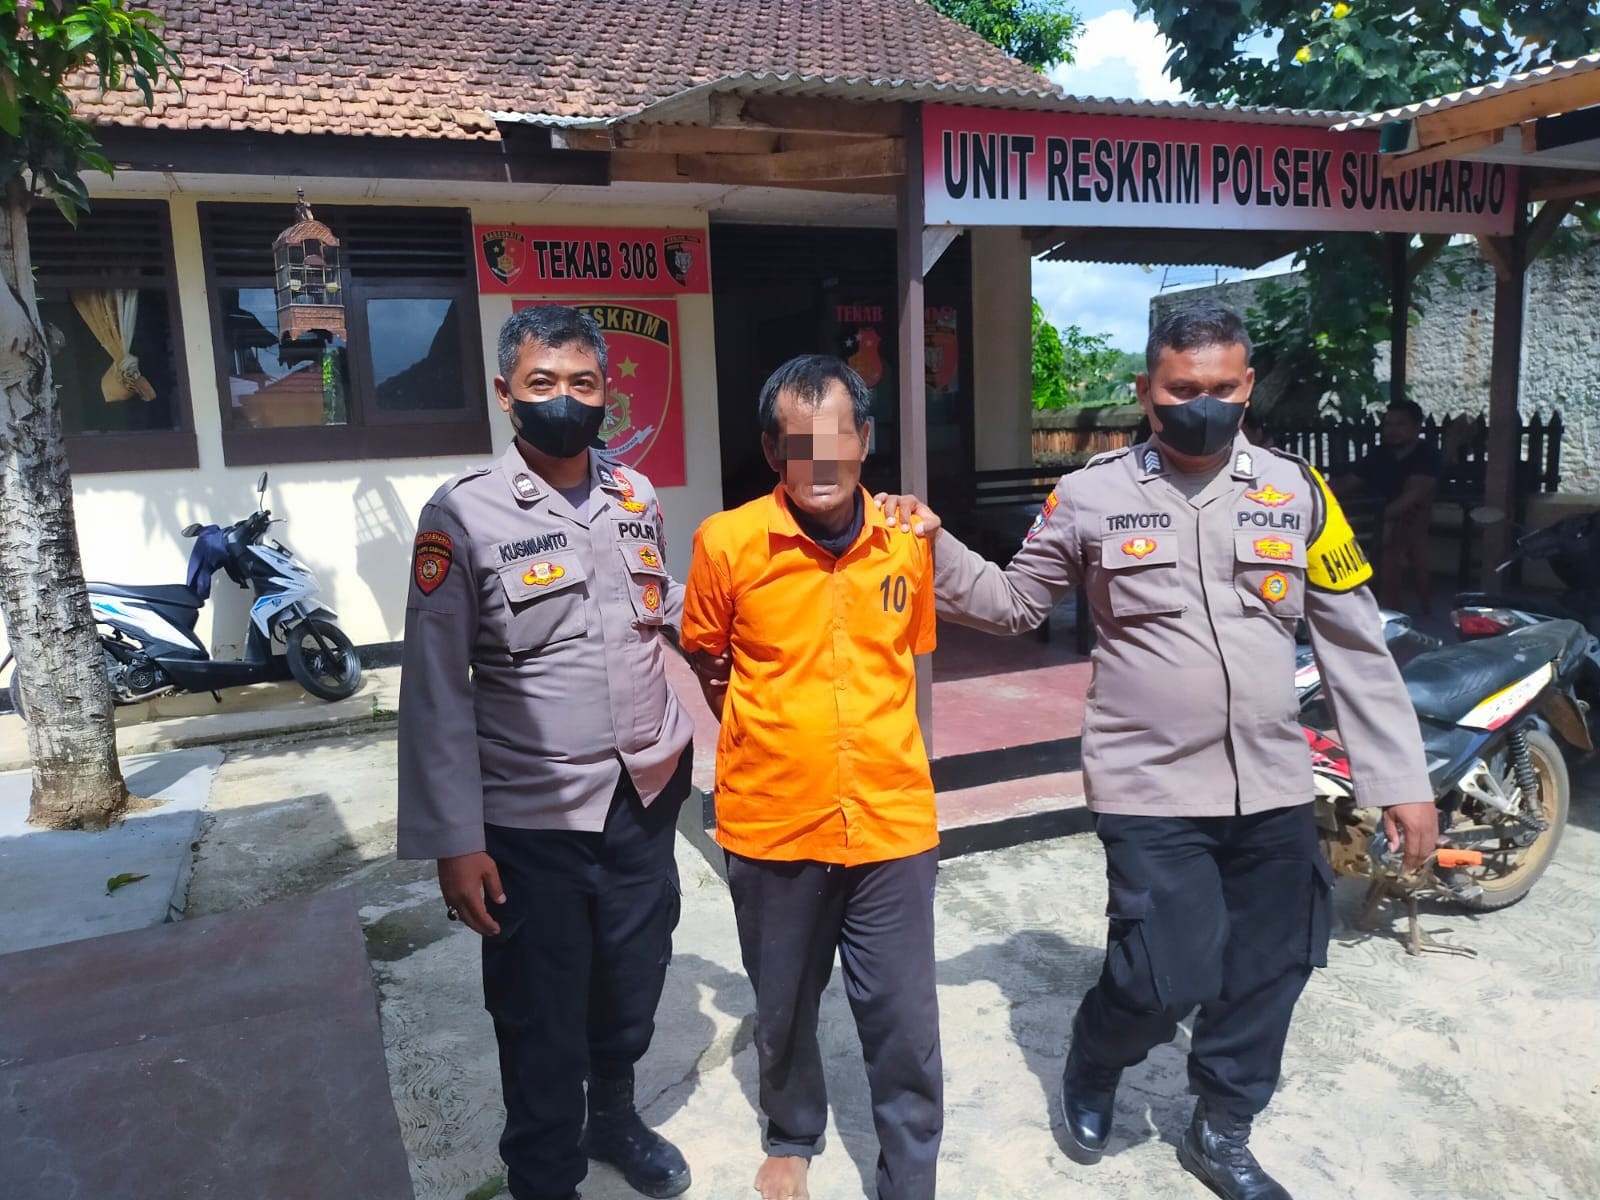 Maling Motor Untuk Beli Narkotika, Seorang Buruh Tani Di Pringsewu Lampung Diamankan Polisi